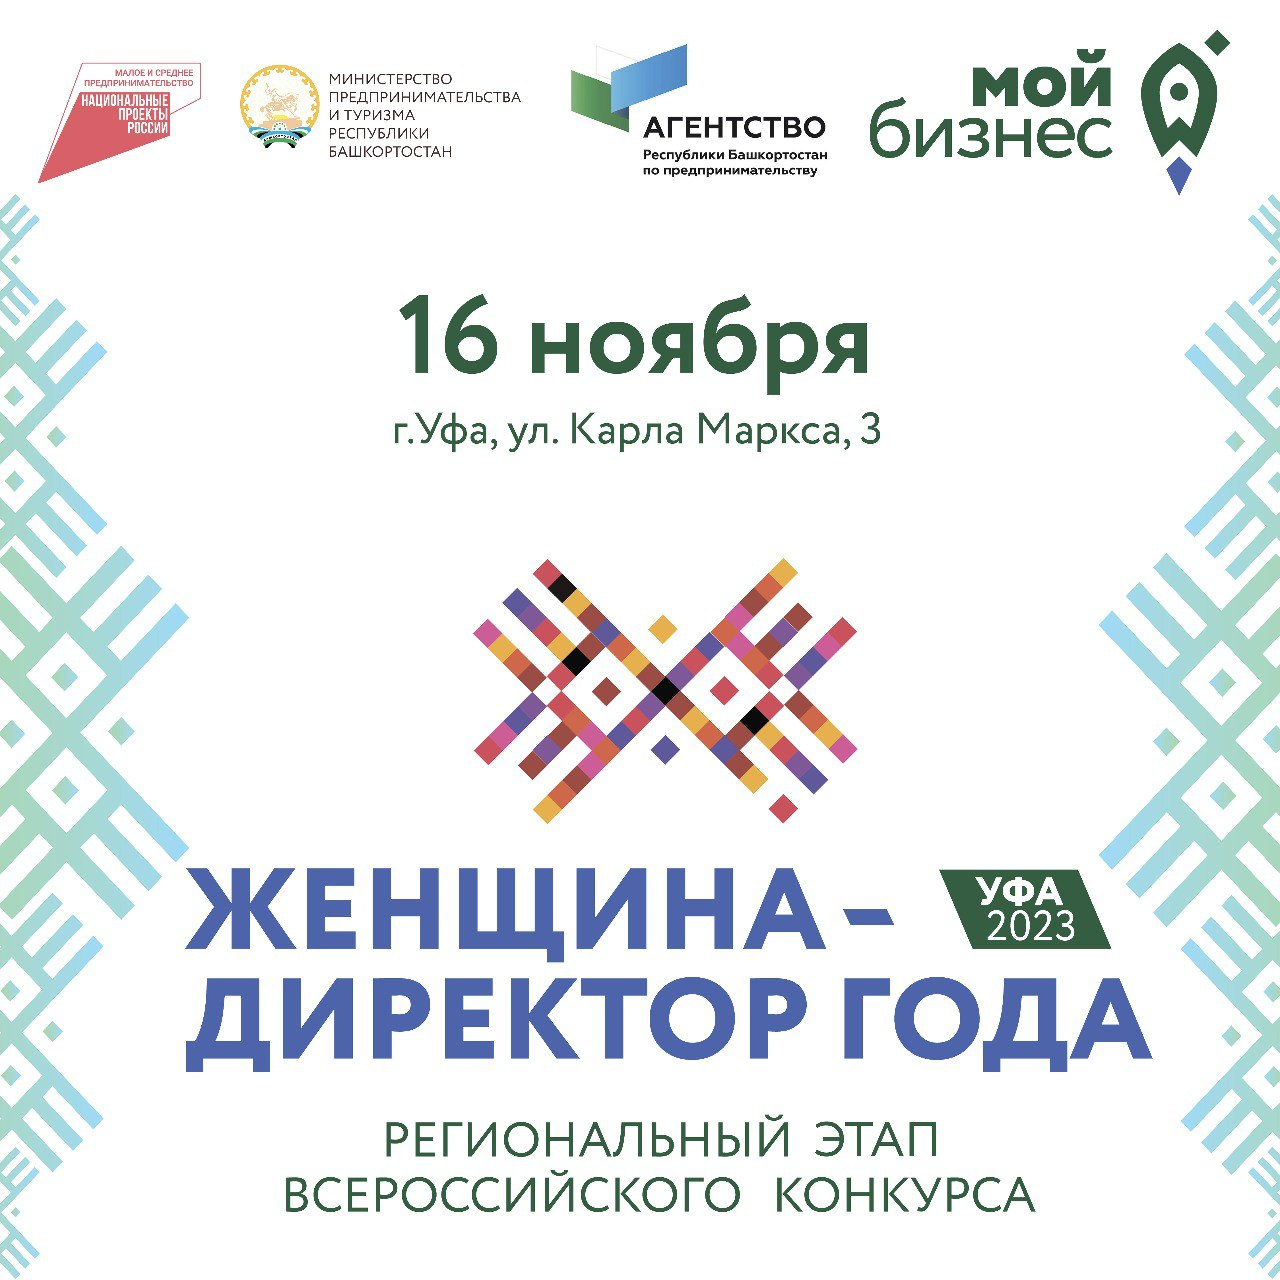 Уже в этот четверг состоится Региональный этап Всероссийского конкурса «Женщина — директор года»